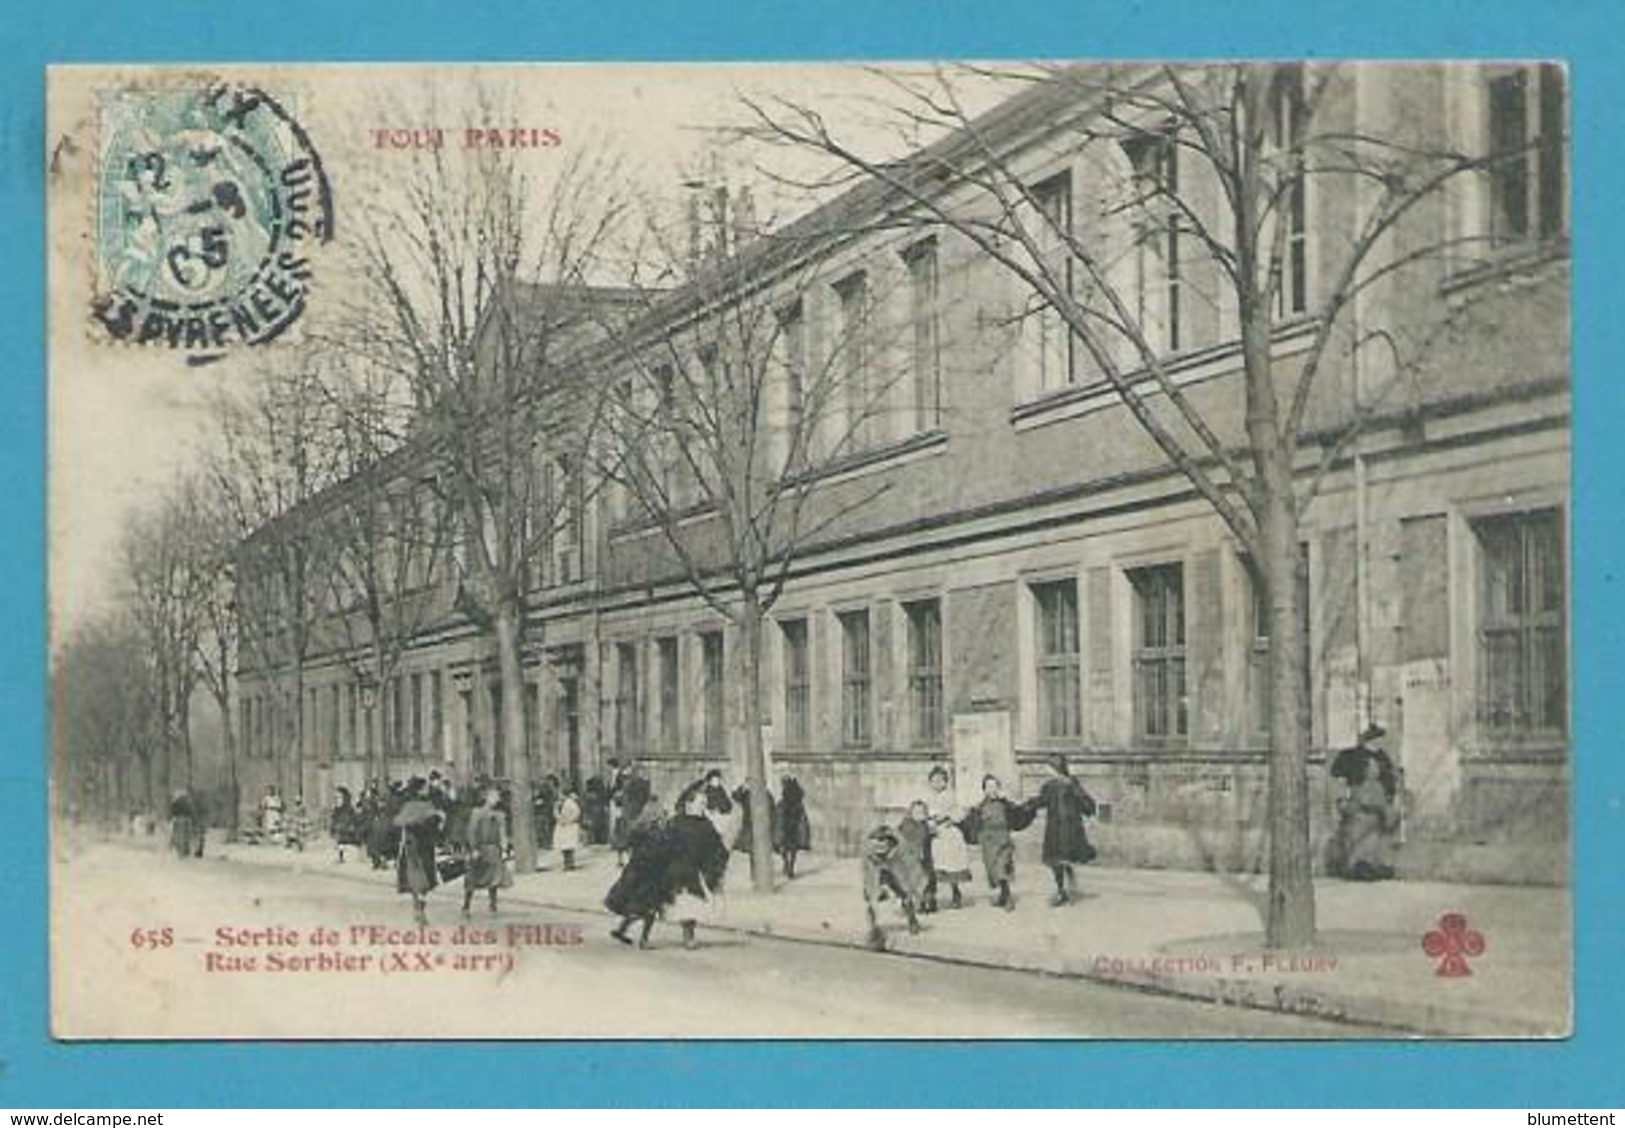 CPA 658 TOUT PARIS - Sortie De L'Ecole Des Filles Rue Sorbier (XXème) - Editeur FLEURY - District 20